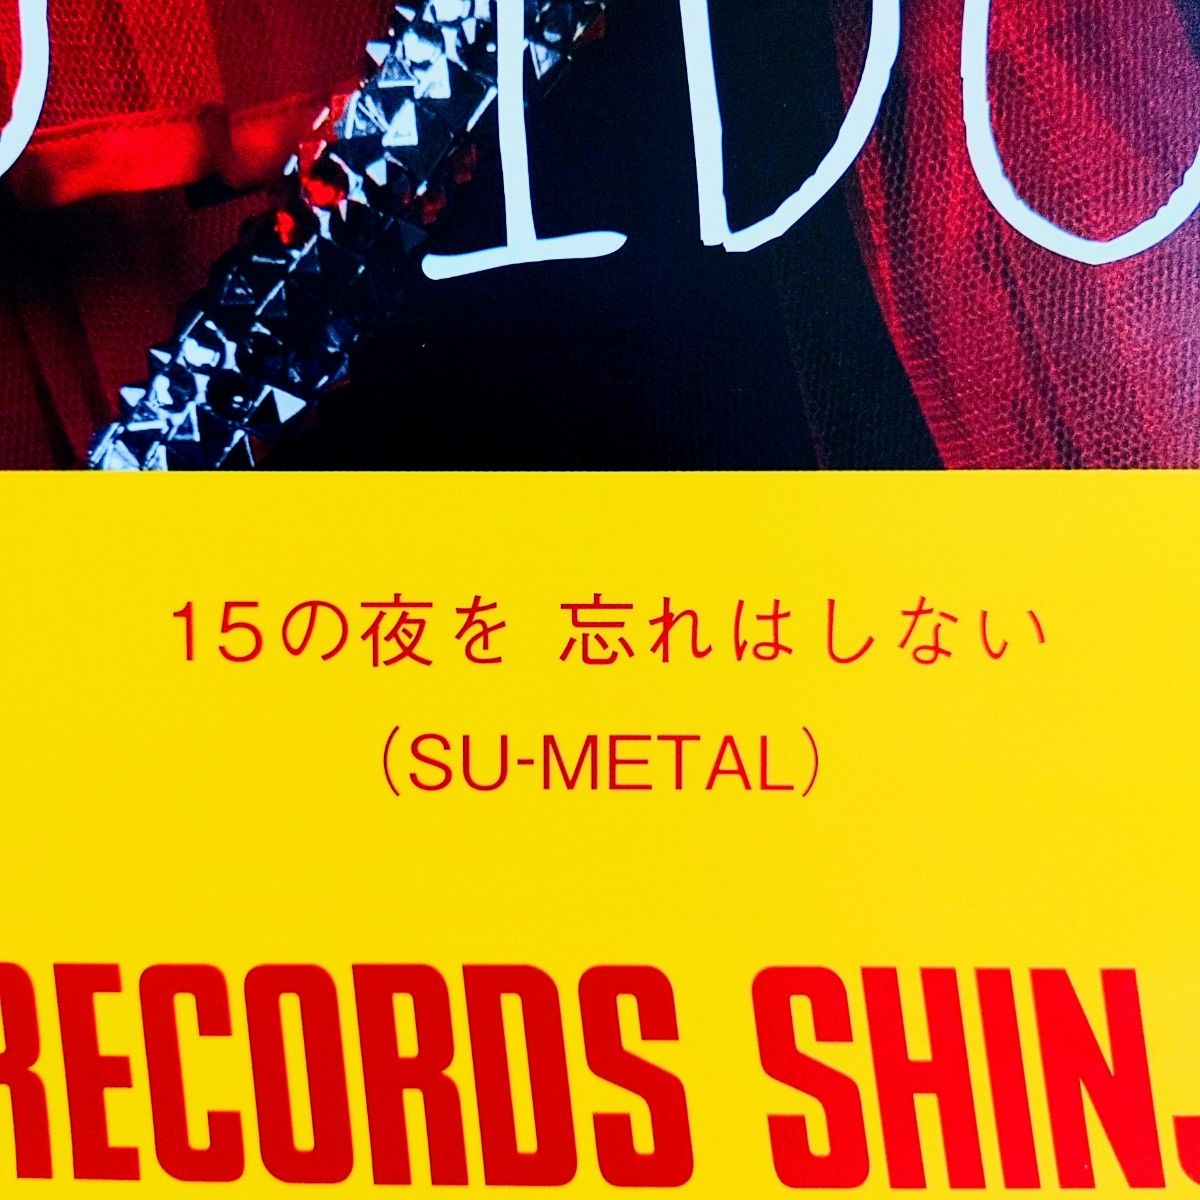 【正規品】BABYMETAL『ヘドバンギャー！！』タワーレコード購入特典B2ポスター SU-METAL version